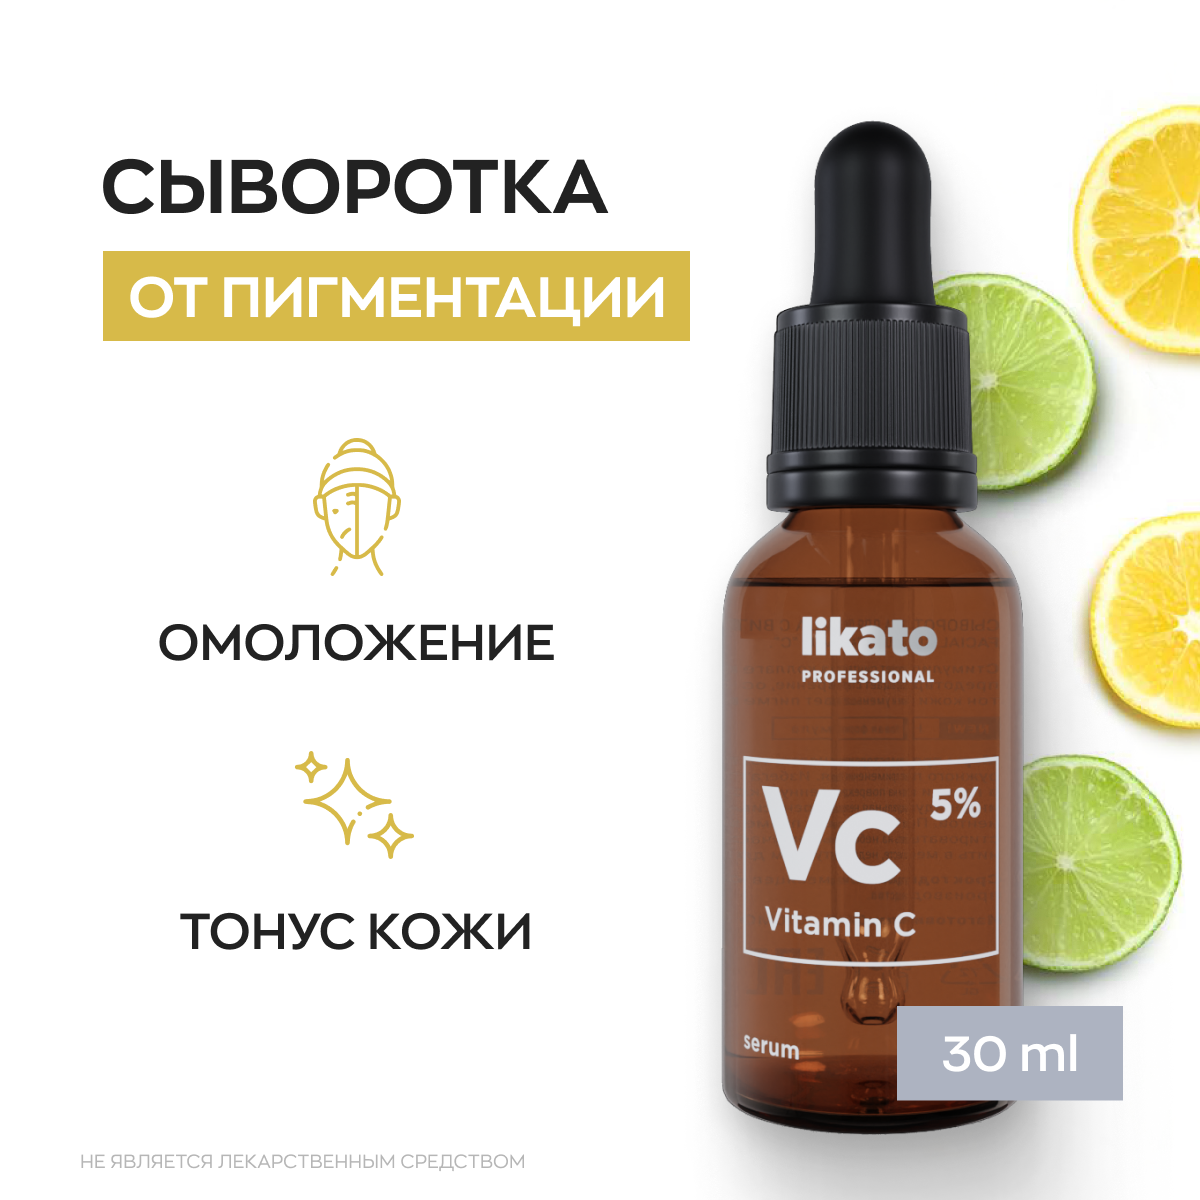 Сыворотка для лица с высокой концентрацией витамина С (5%) от пигментации для отбеливания и ровного тона кожи Likato Professional 30 мл